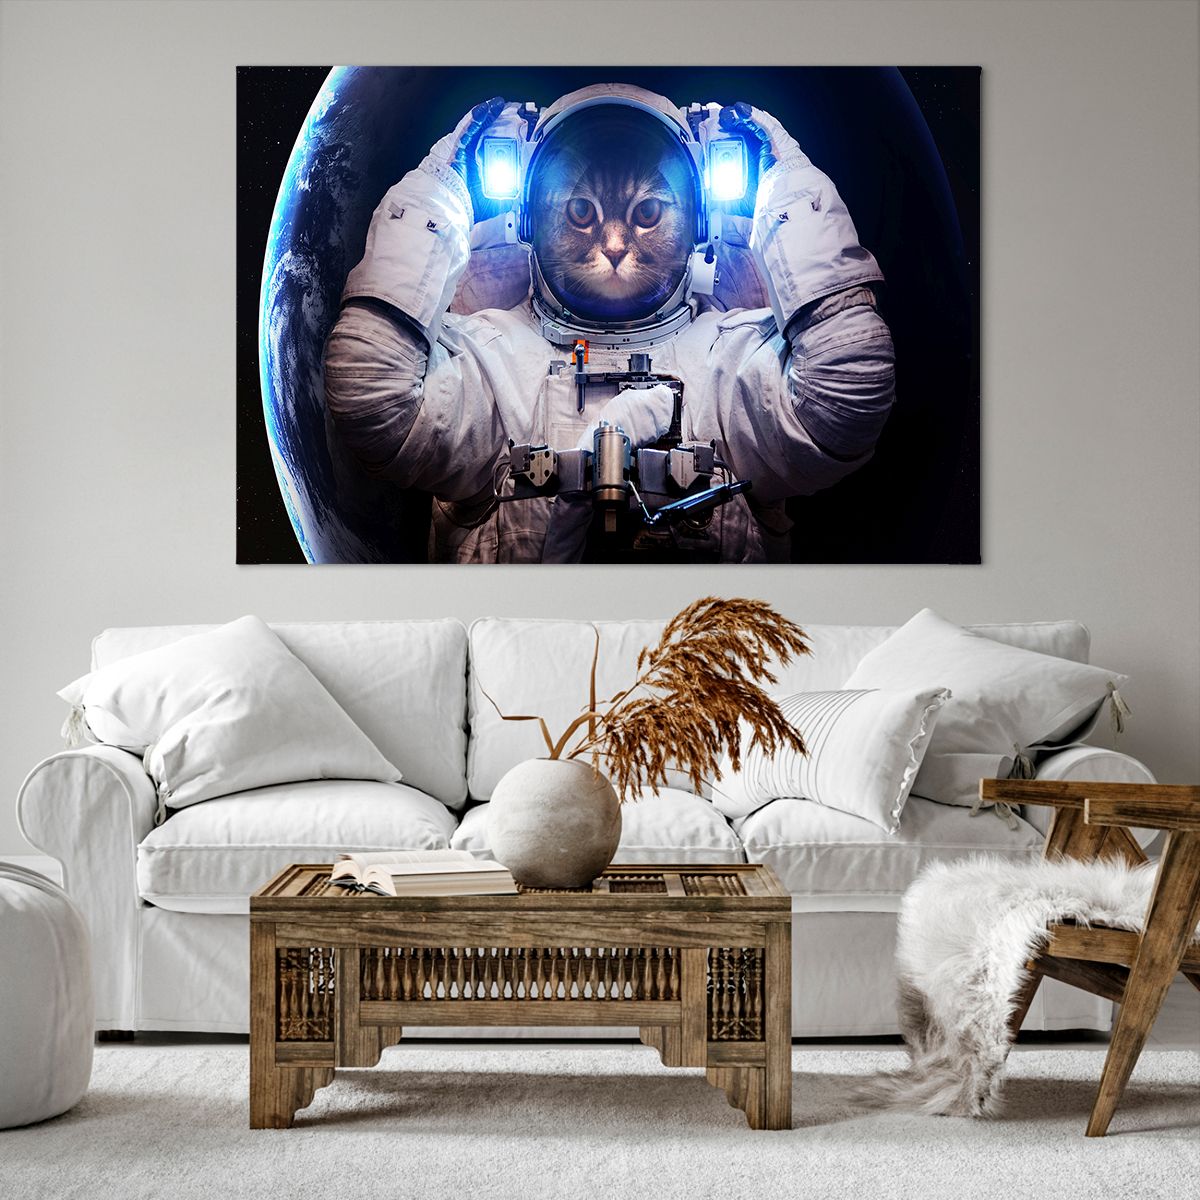 Bild auf Leinwand Abstraktion, Bild auf Leinwand Astronaut, Bild auf Leinwand Kosmos, Bild auf Leinwand Kunst, Bild auf Leinwand Katze